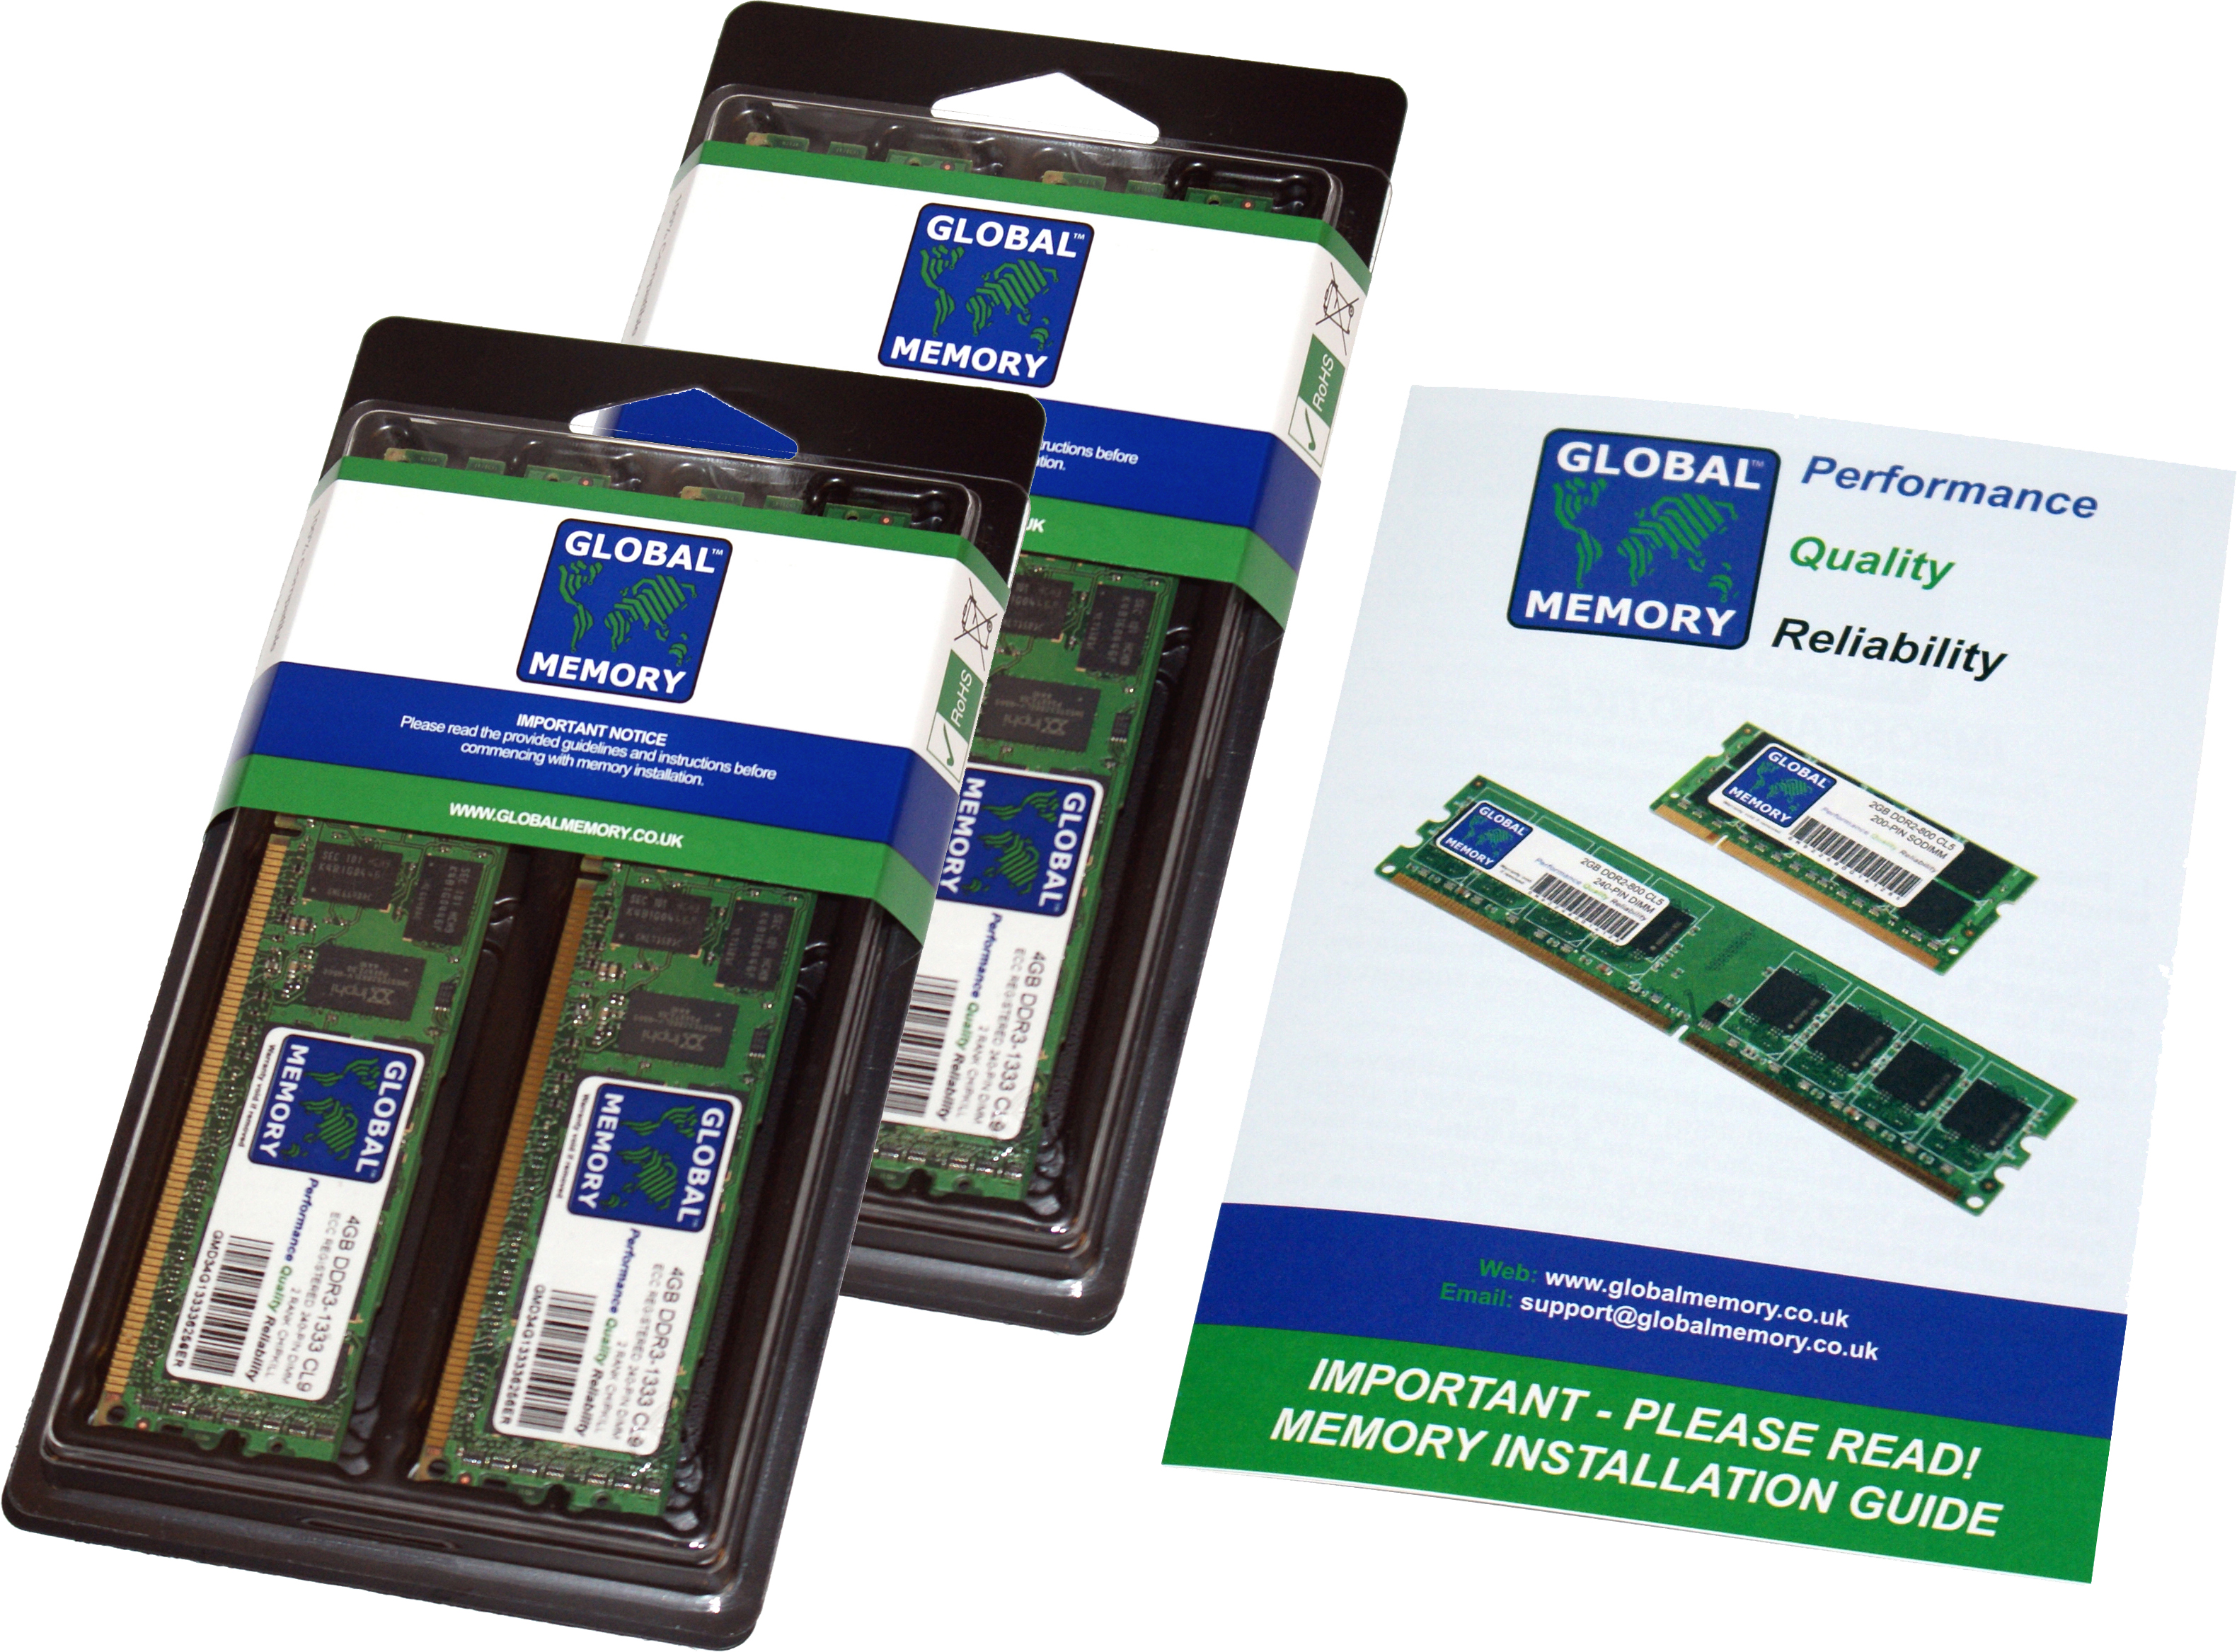 128GB (4 x 32GB) DDR4 2133MHz PC4-17000 288-PIN ECC REGISTERED DIMM (RDIMM) MEMORY RAM KIT FOR HEWLETT-PACKARD SERVERS/WORKSTATIONS (8 RANK KIT CHIPKILL)